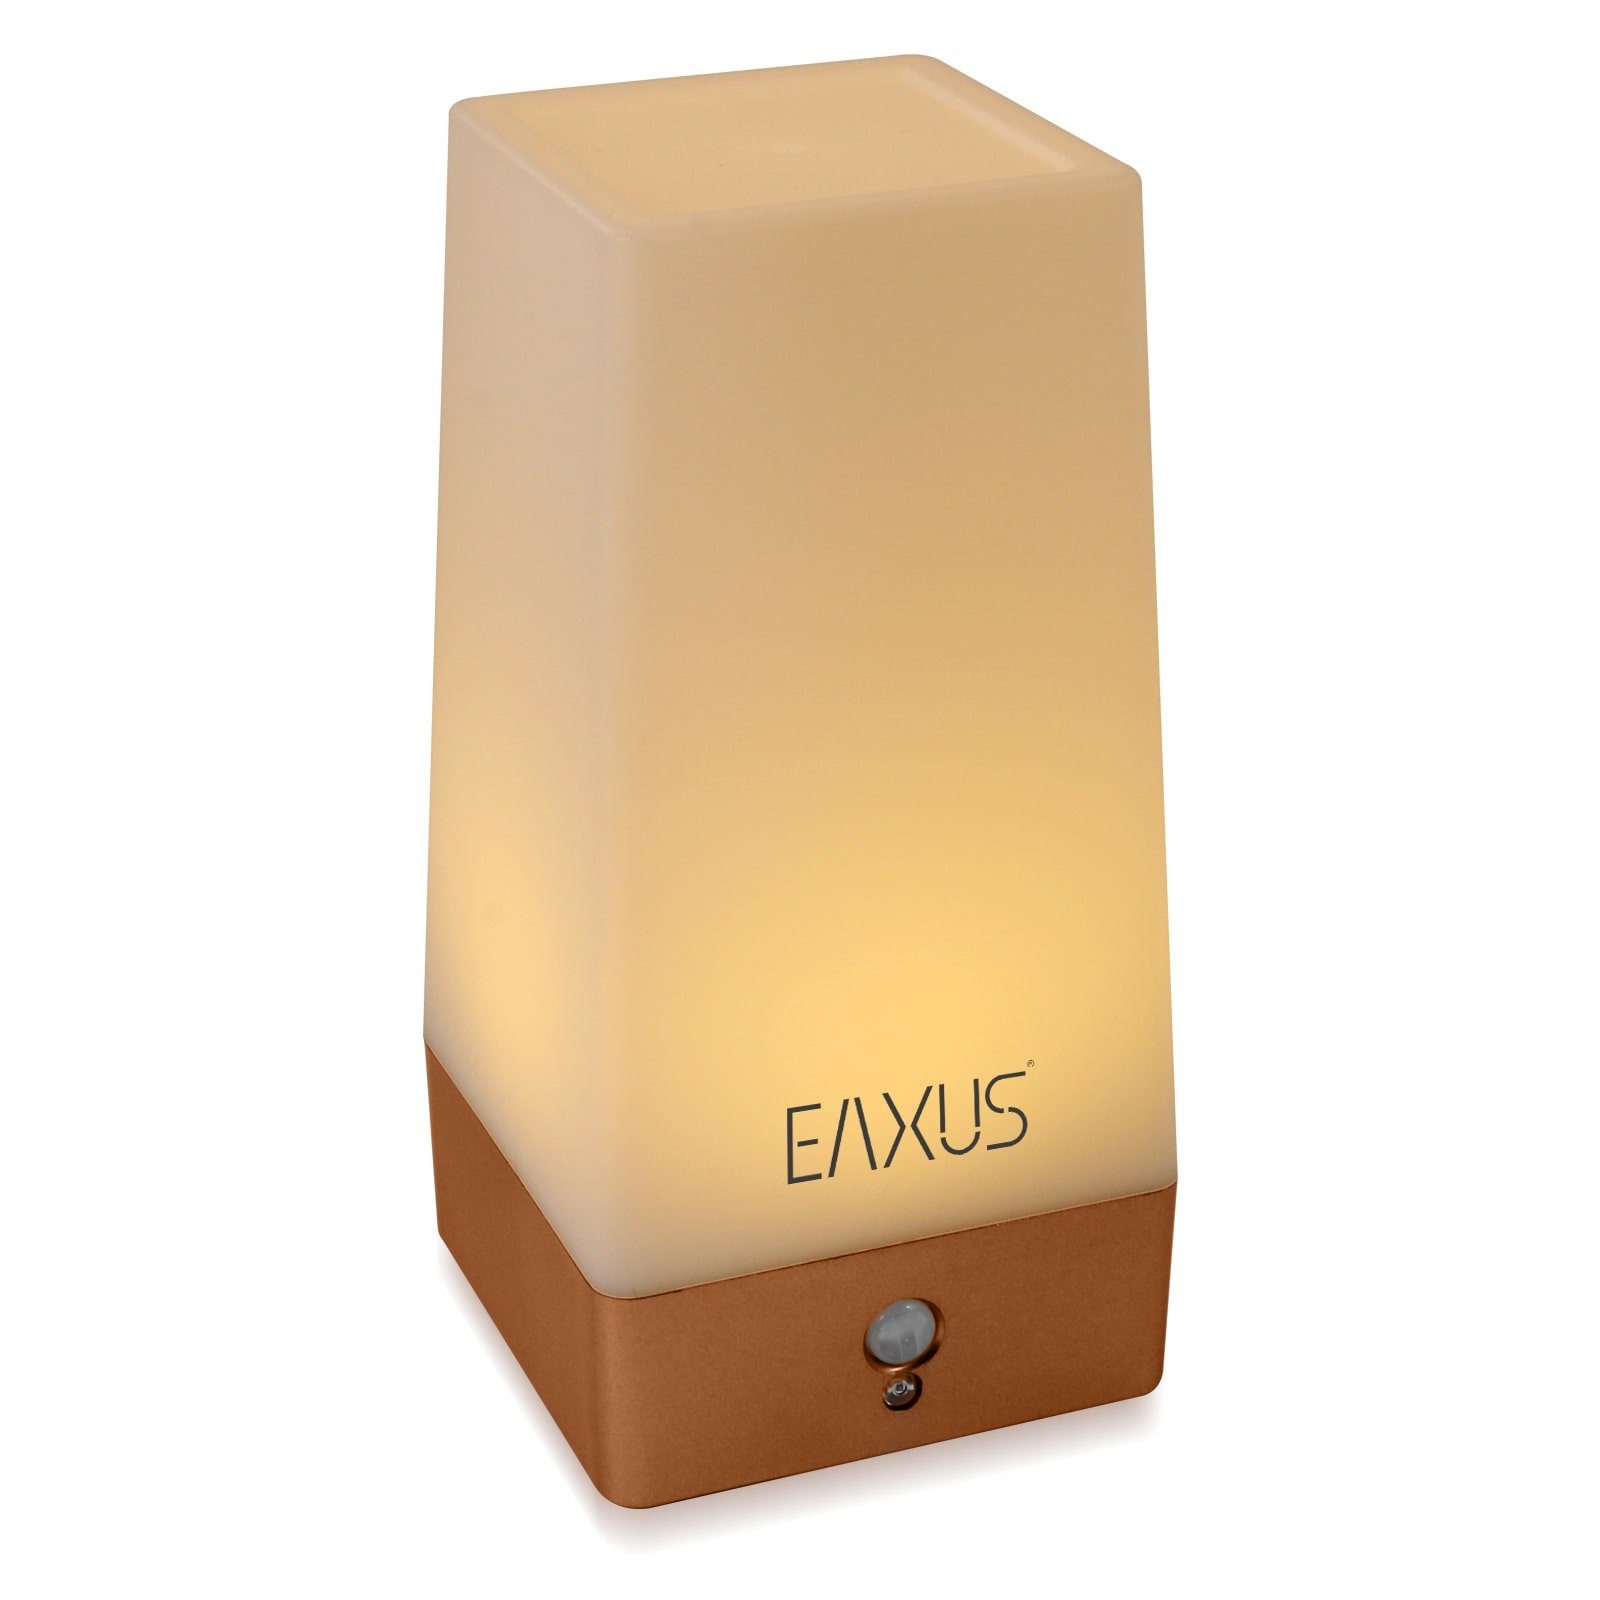 Direktshop echt! EAXUS LED Tischleuchte im Nachttischleuchte, LED & fest mit integriert, Nachtlampe Kabllose Bewegungssensor Nachtlicht warmweiß, Kupfer/Bronze Look, Dämmerungssensor